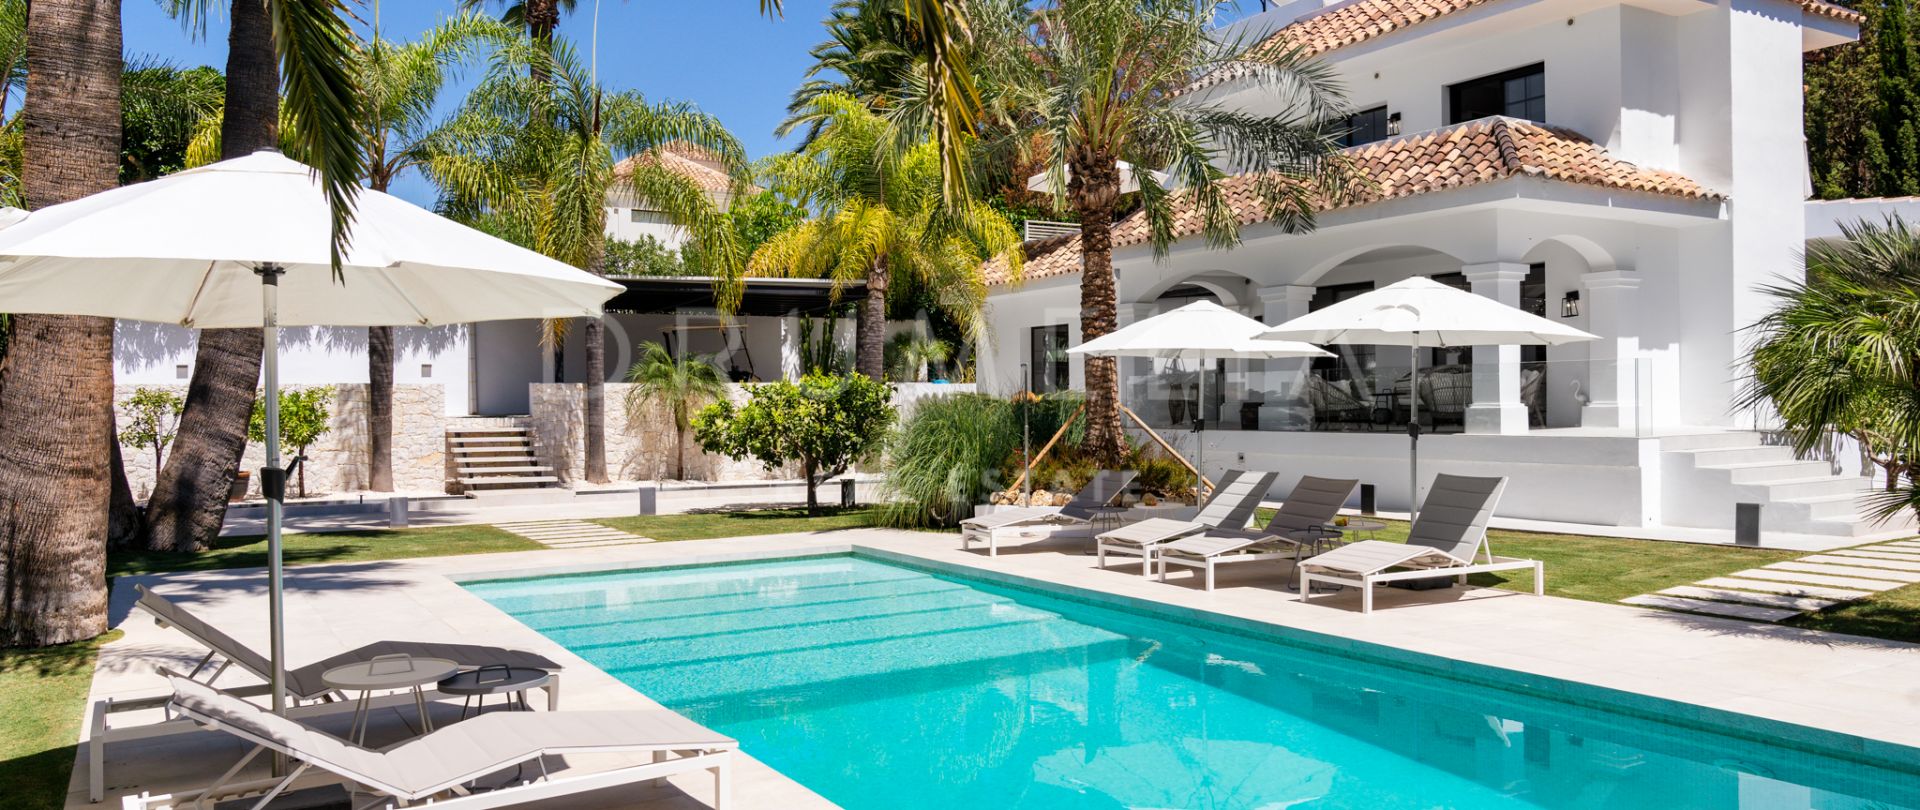 Beautifully renovated luxury villa close to Los Naranjos Golf Club in New Andalucía, Marbella.